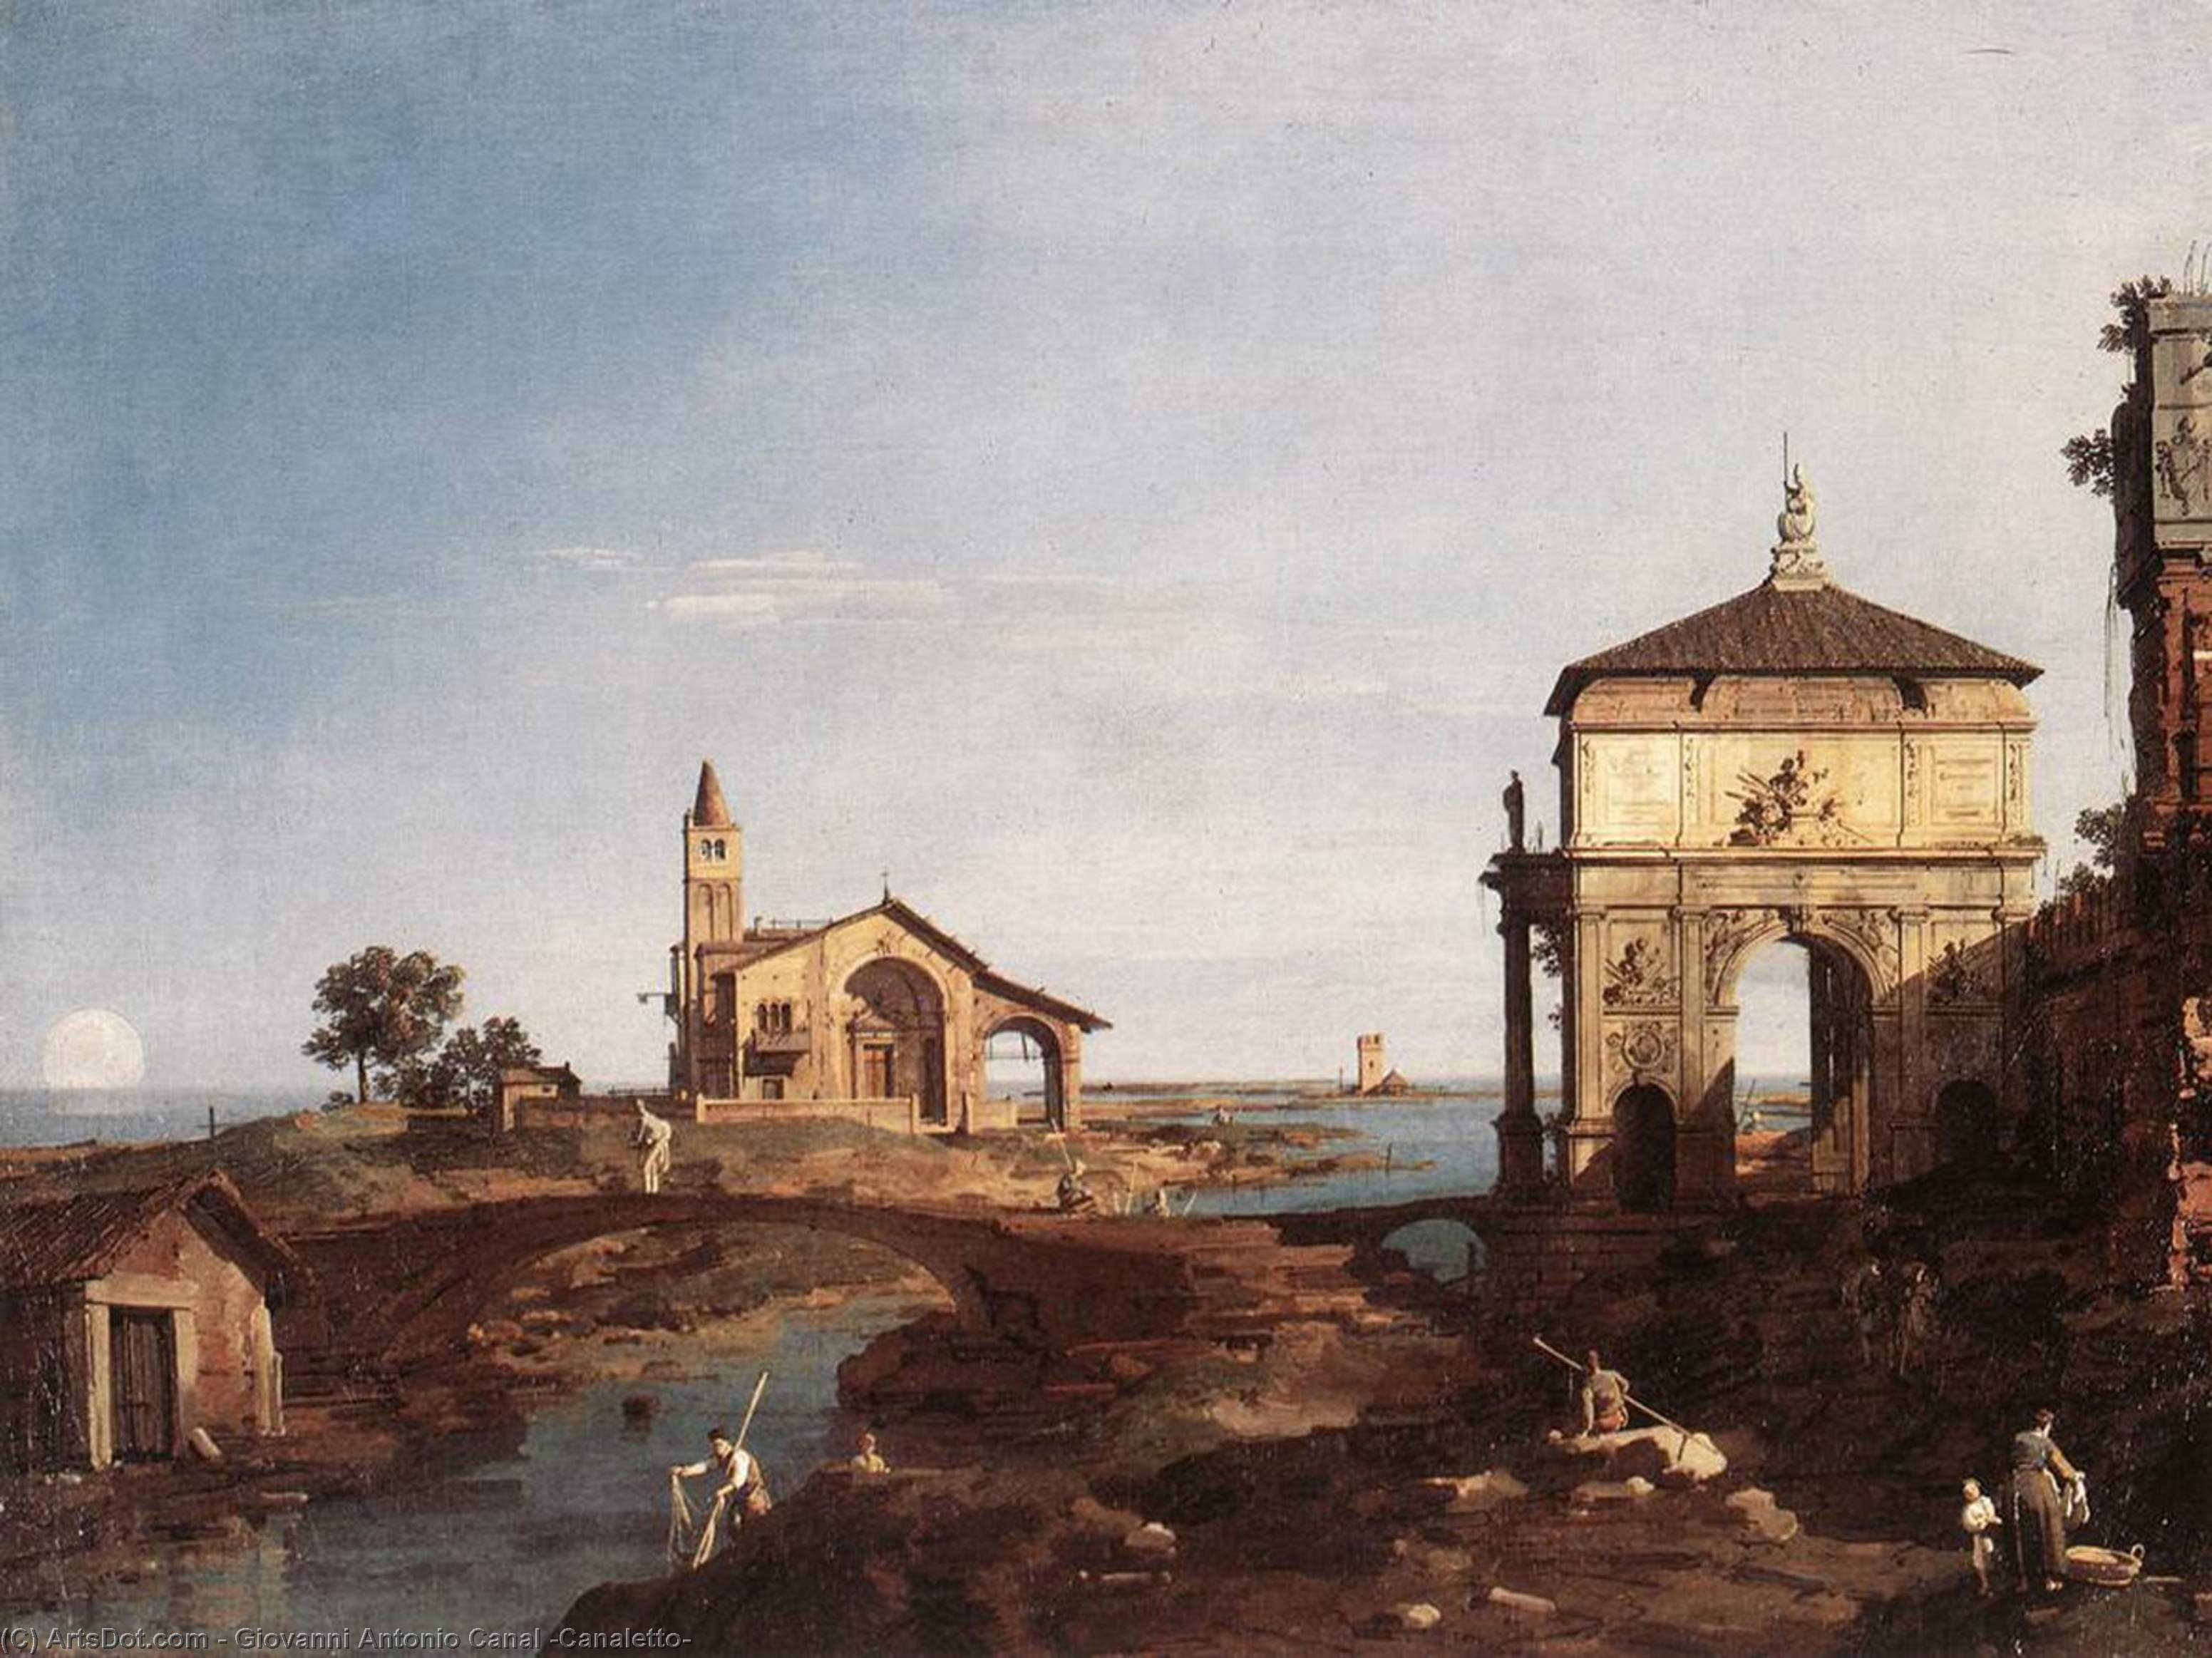 WikiOO.org - Εγκυκλοπαίδεια Καλών Τεχνών - Ζωγραφική, έργα τέχνης Giovanni Antonio Canal (Canaletto) - Capriccio with Venetian Motifs